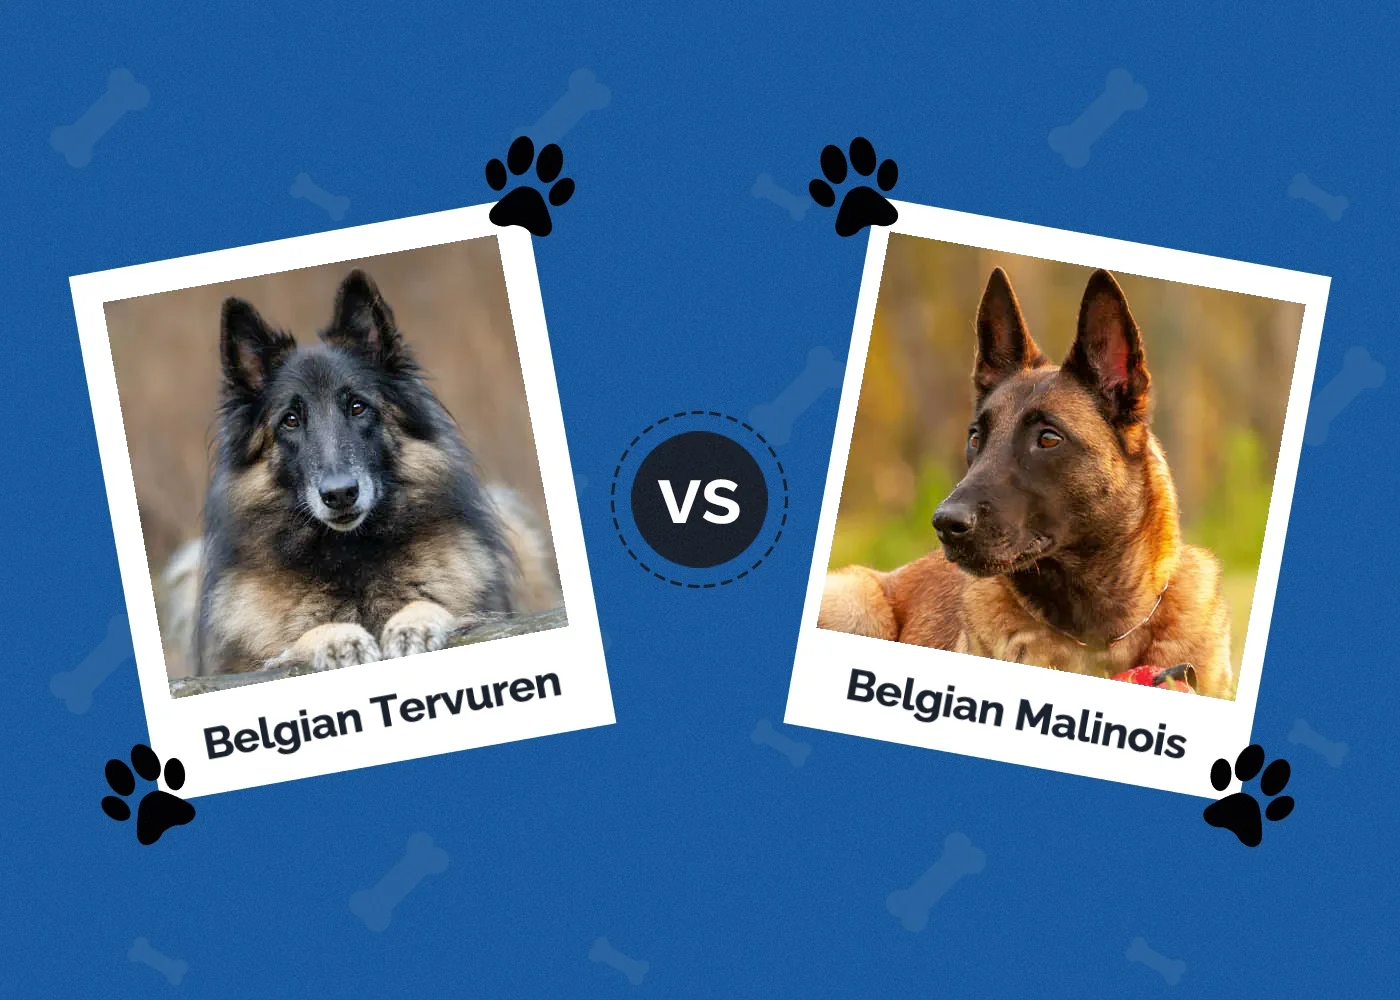 Belgian Tervuren vs Belgian Malinois - Featured Image